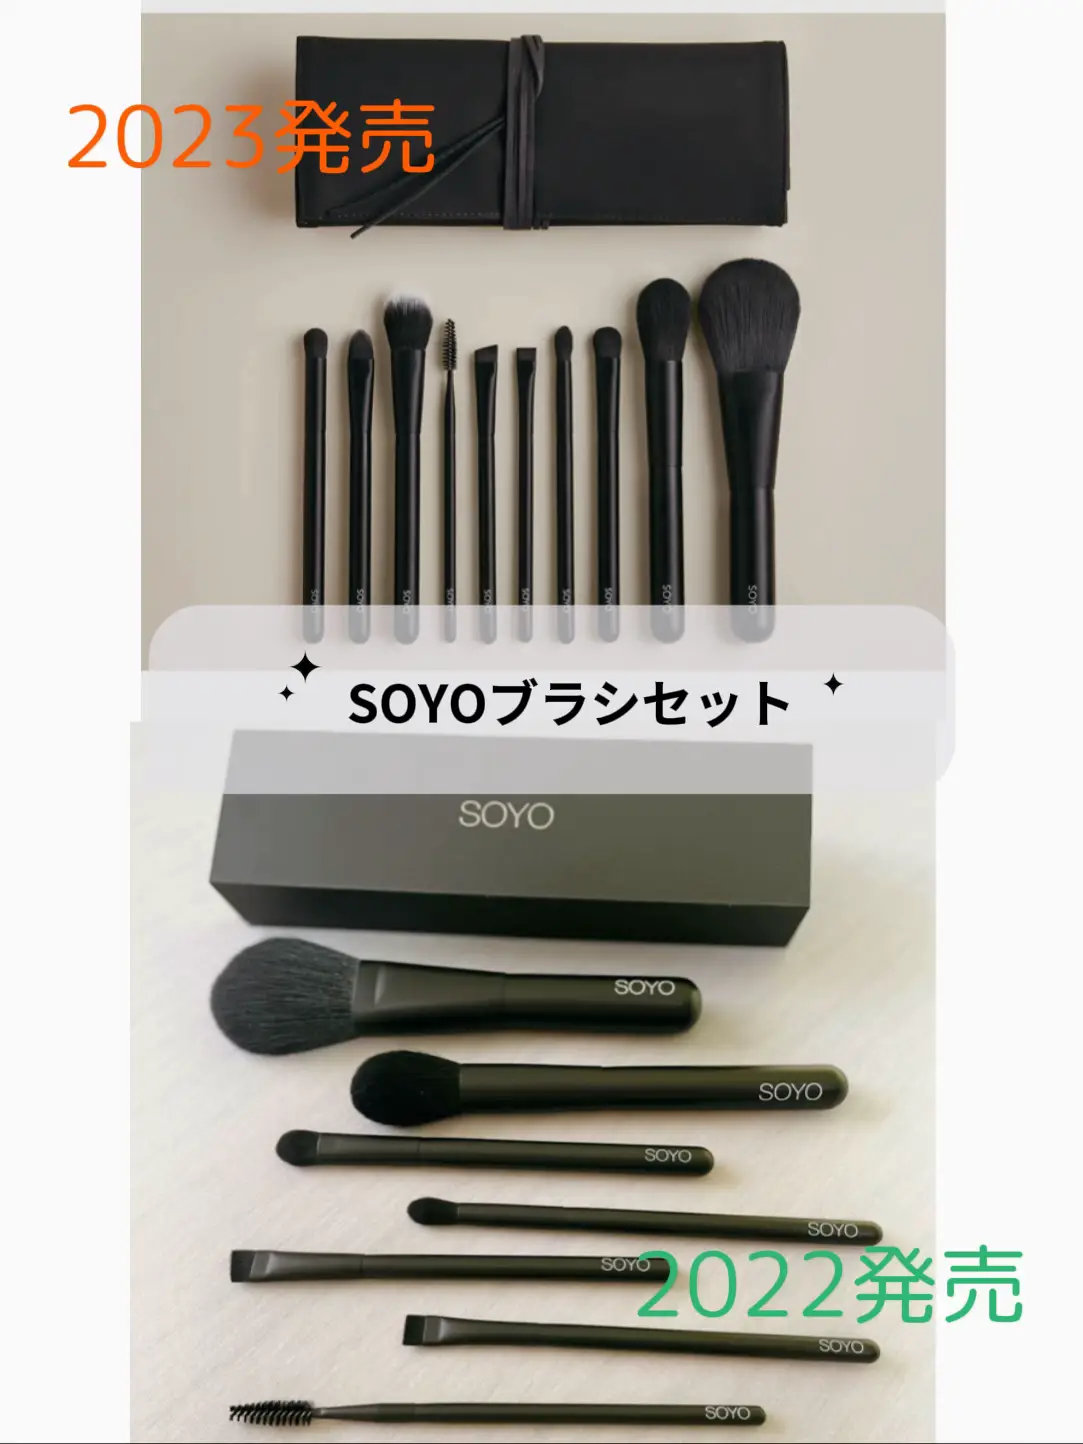 soyo ブラシケース - ファイル・バインダー・ケース